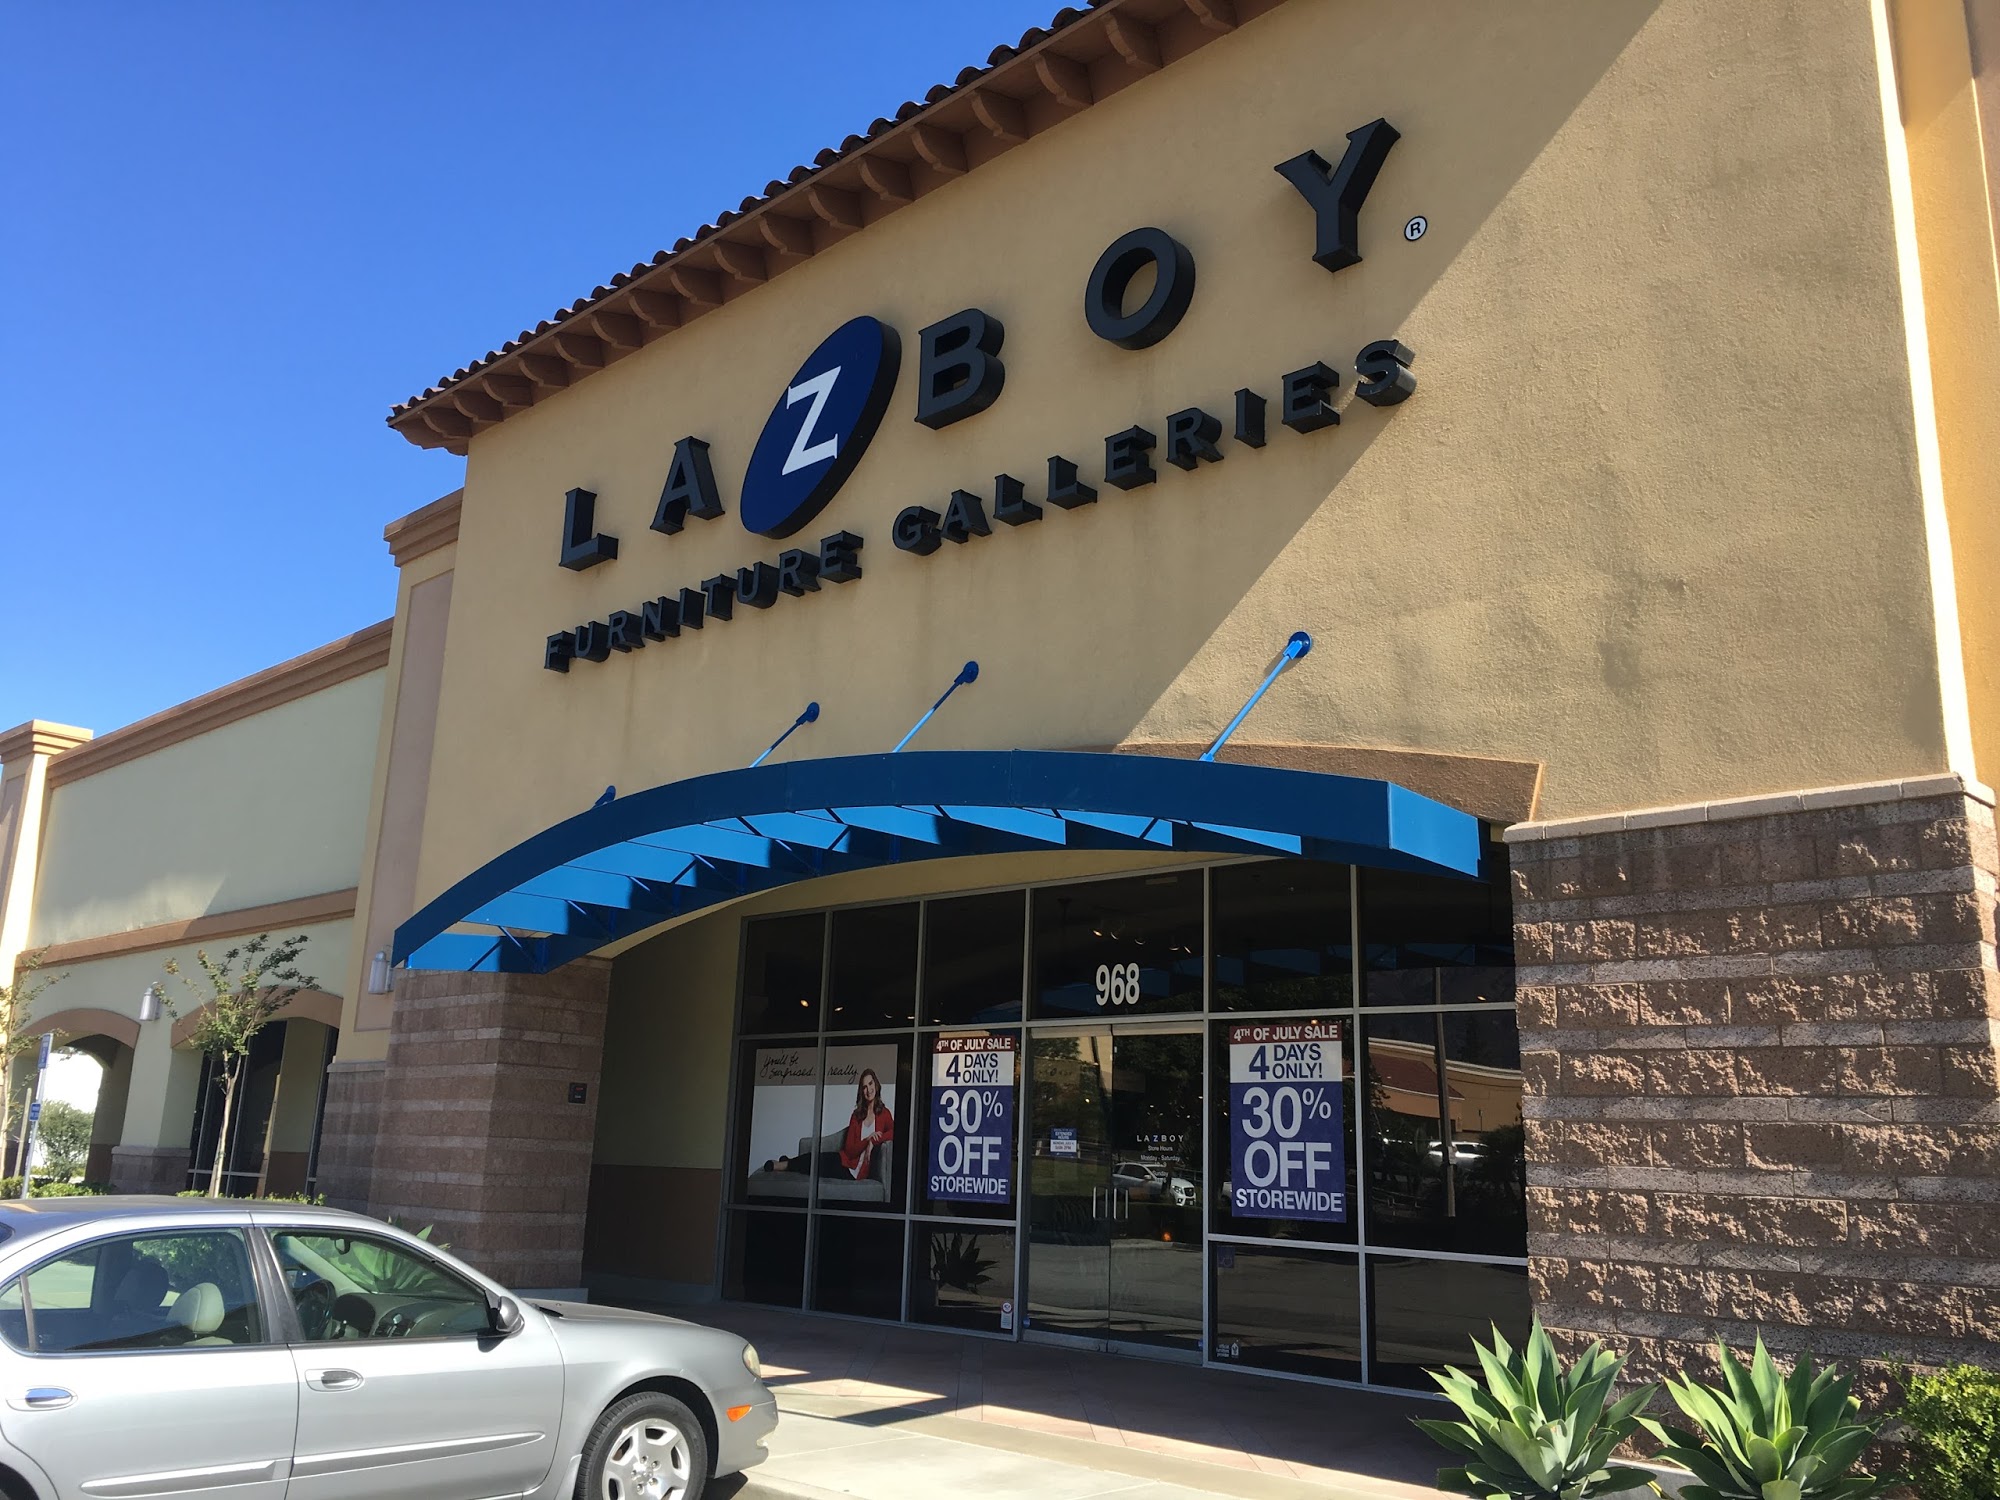 La-Z-Boy Home Furnishings & Décor